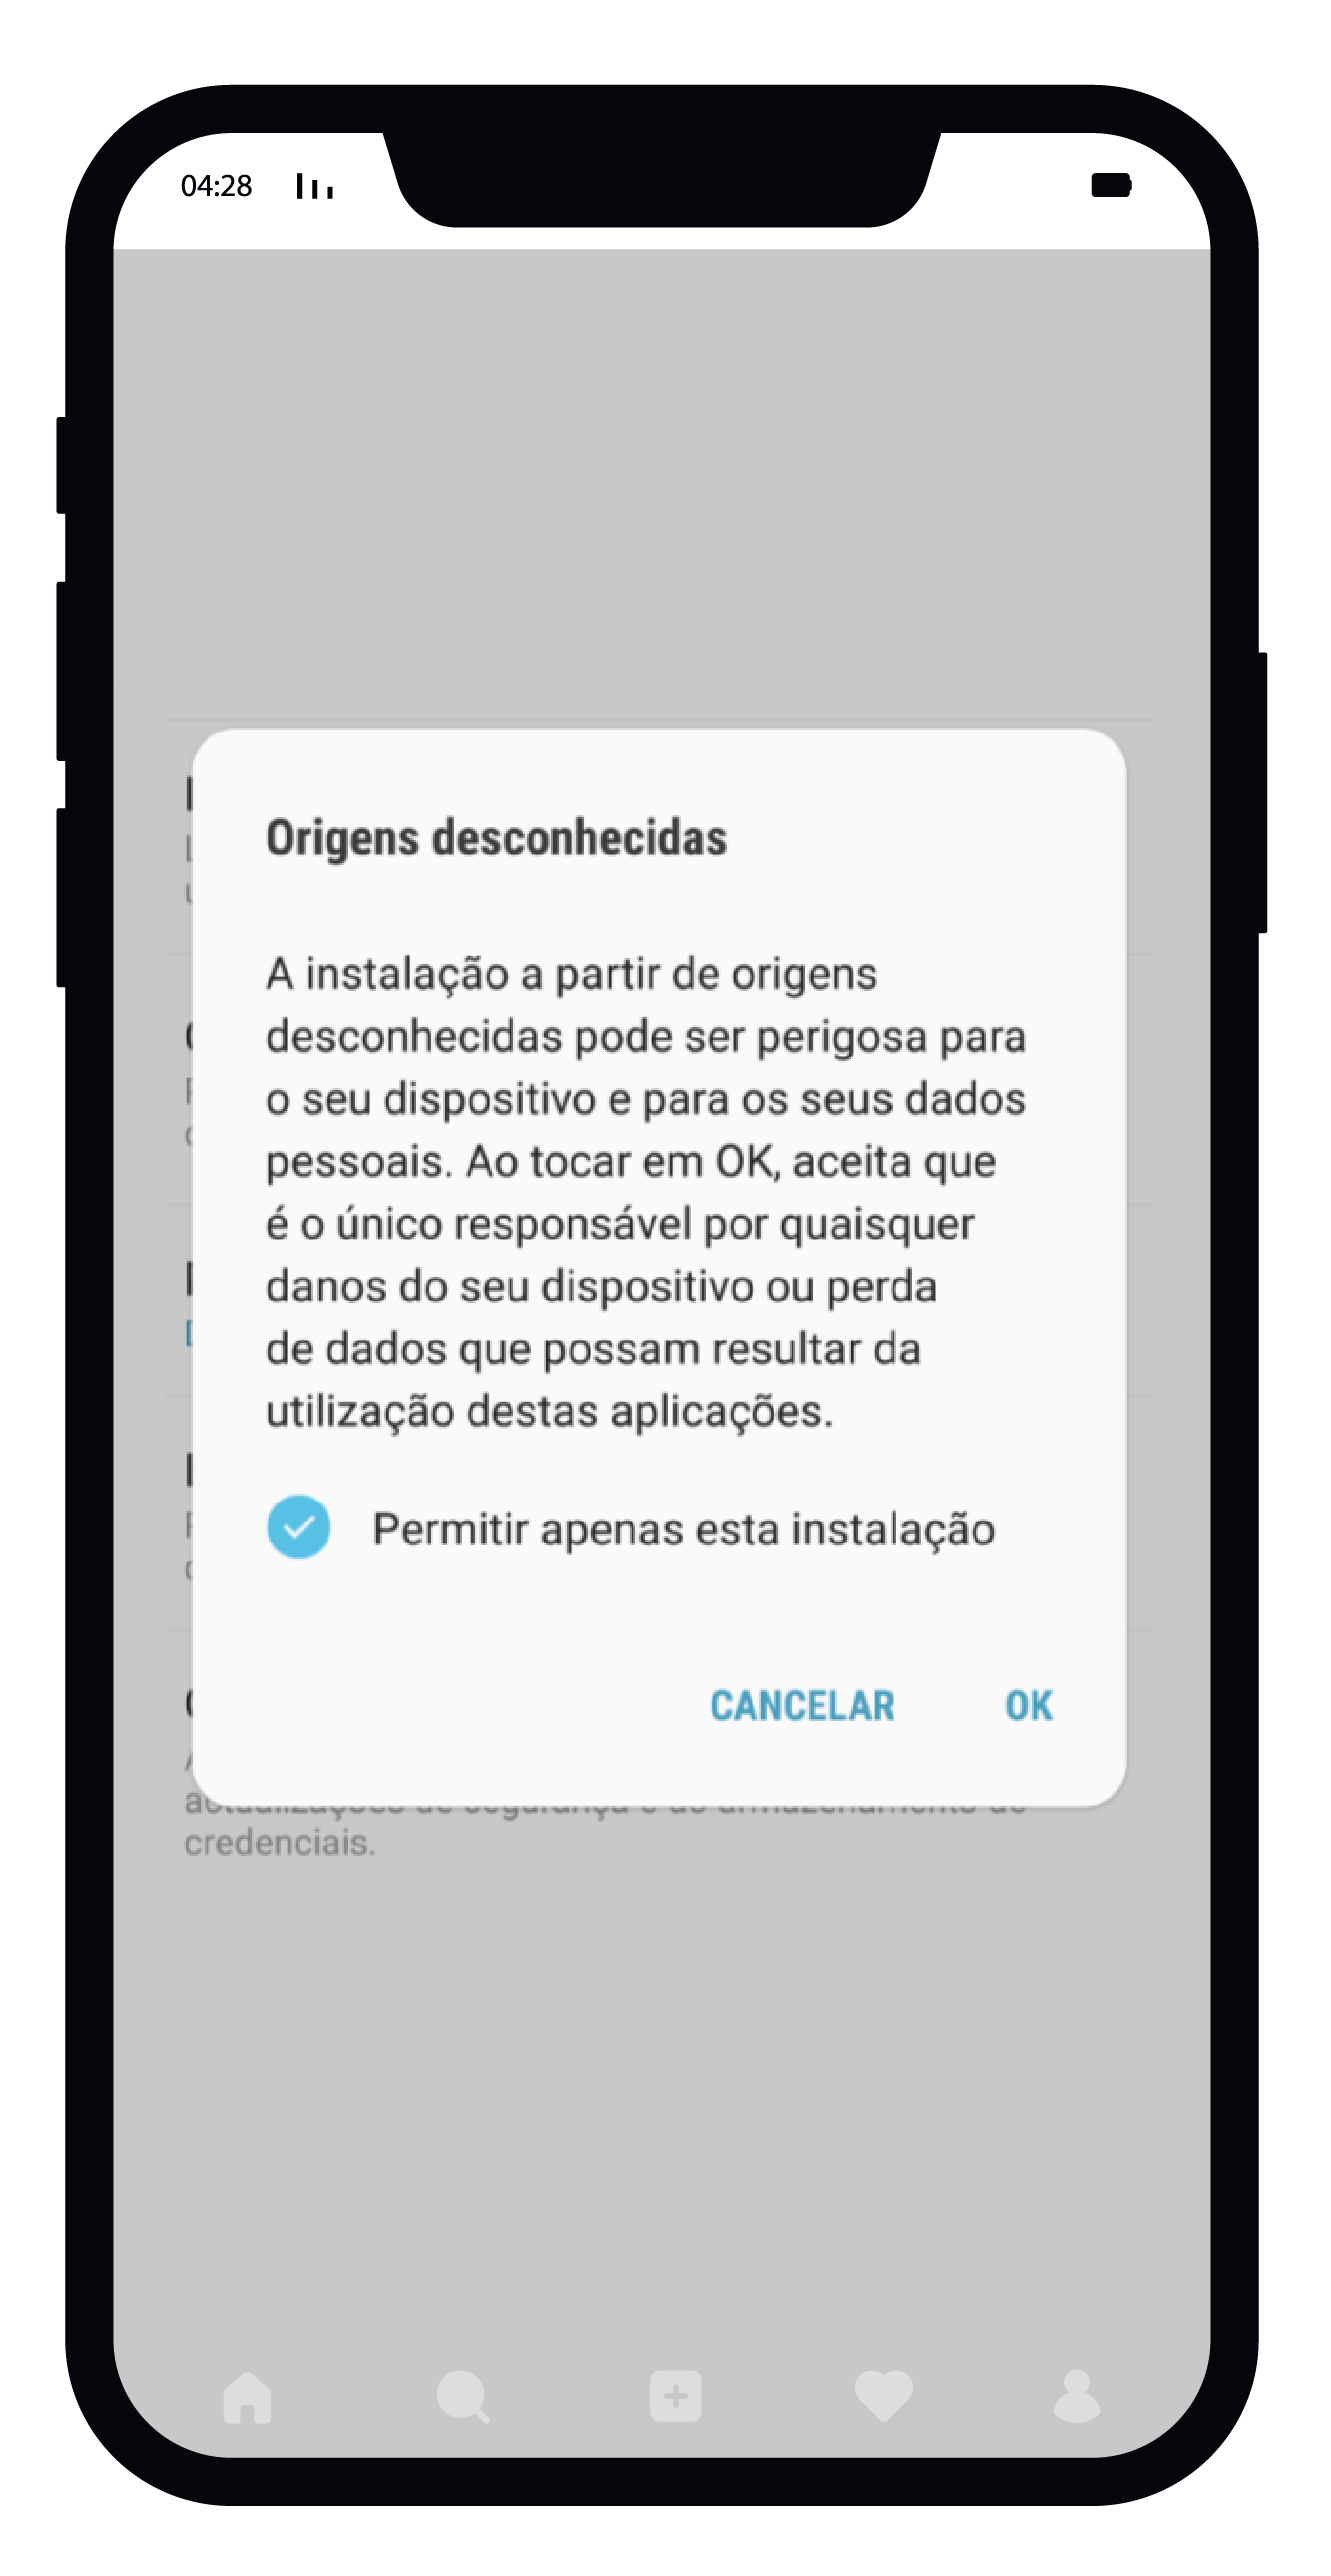 Betano App Baixar do APK para Android no Brasil de Graça